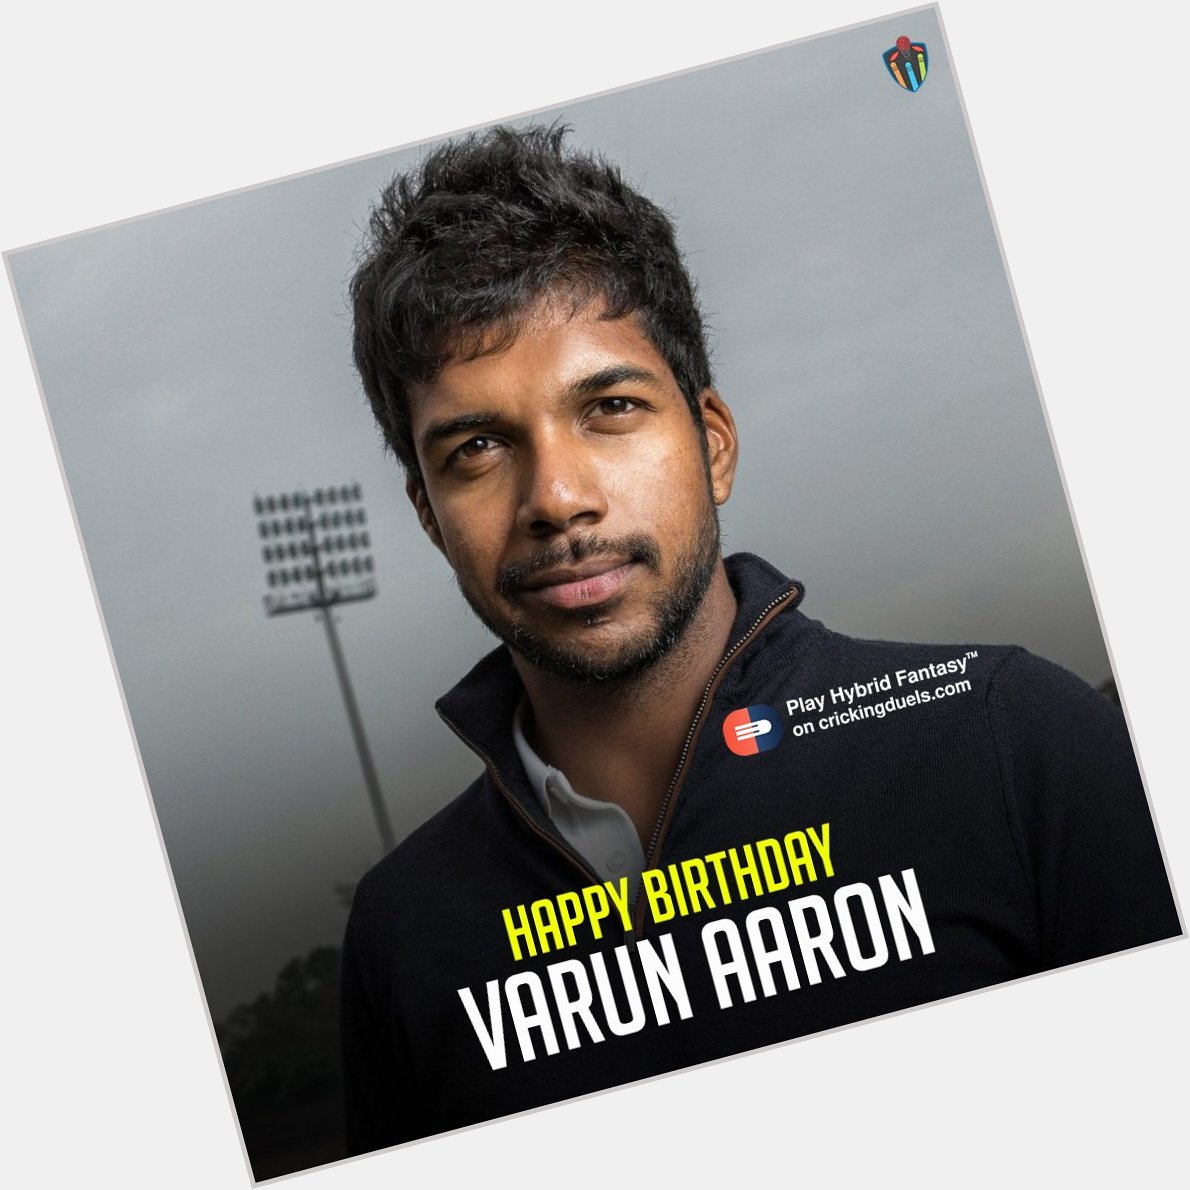 Happy birthday, Varun Aaron. 